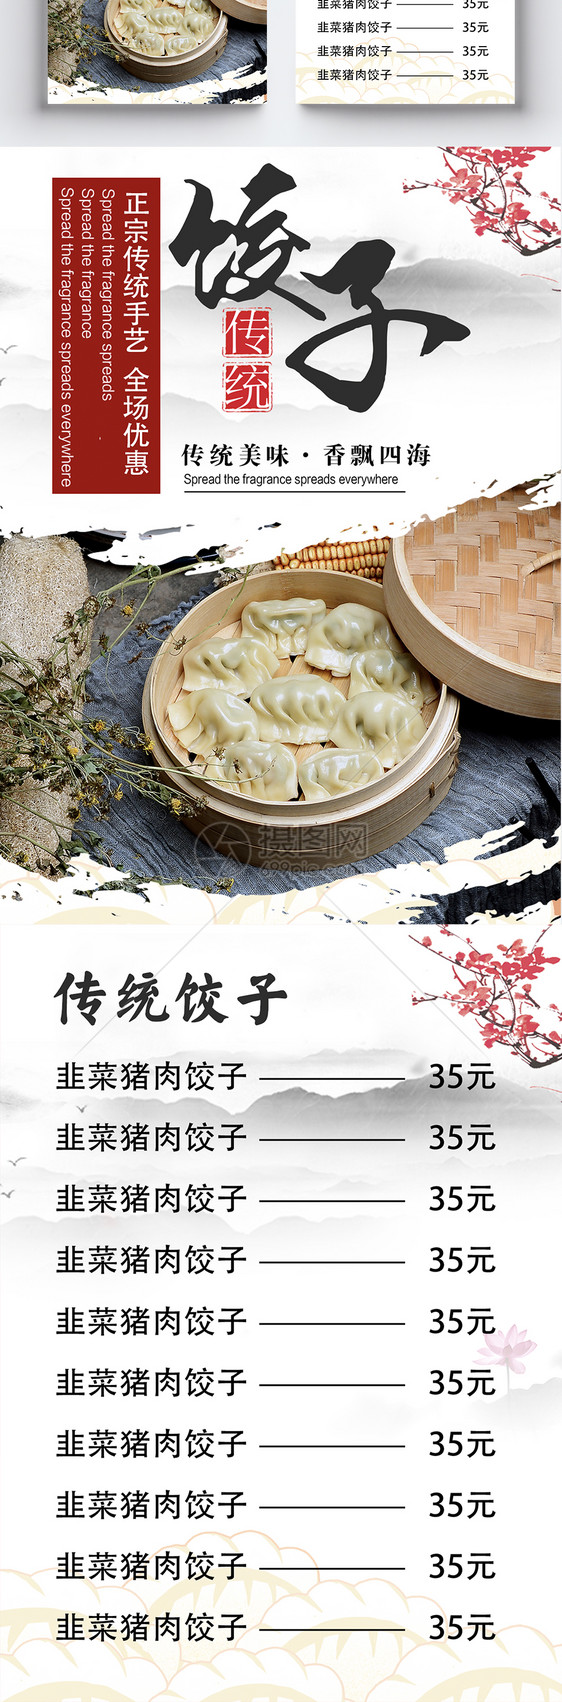 美味饺子美食宣传单图片